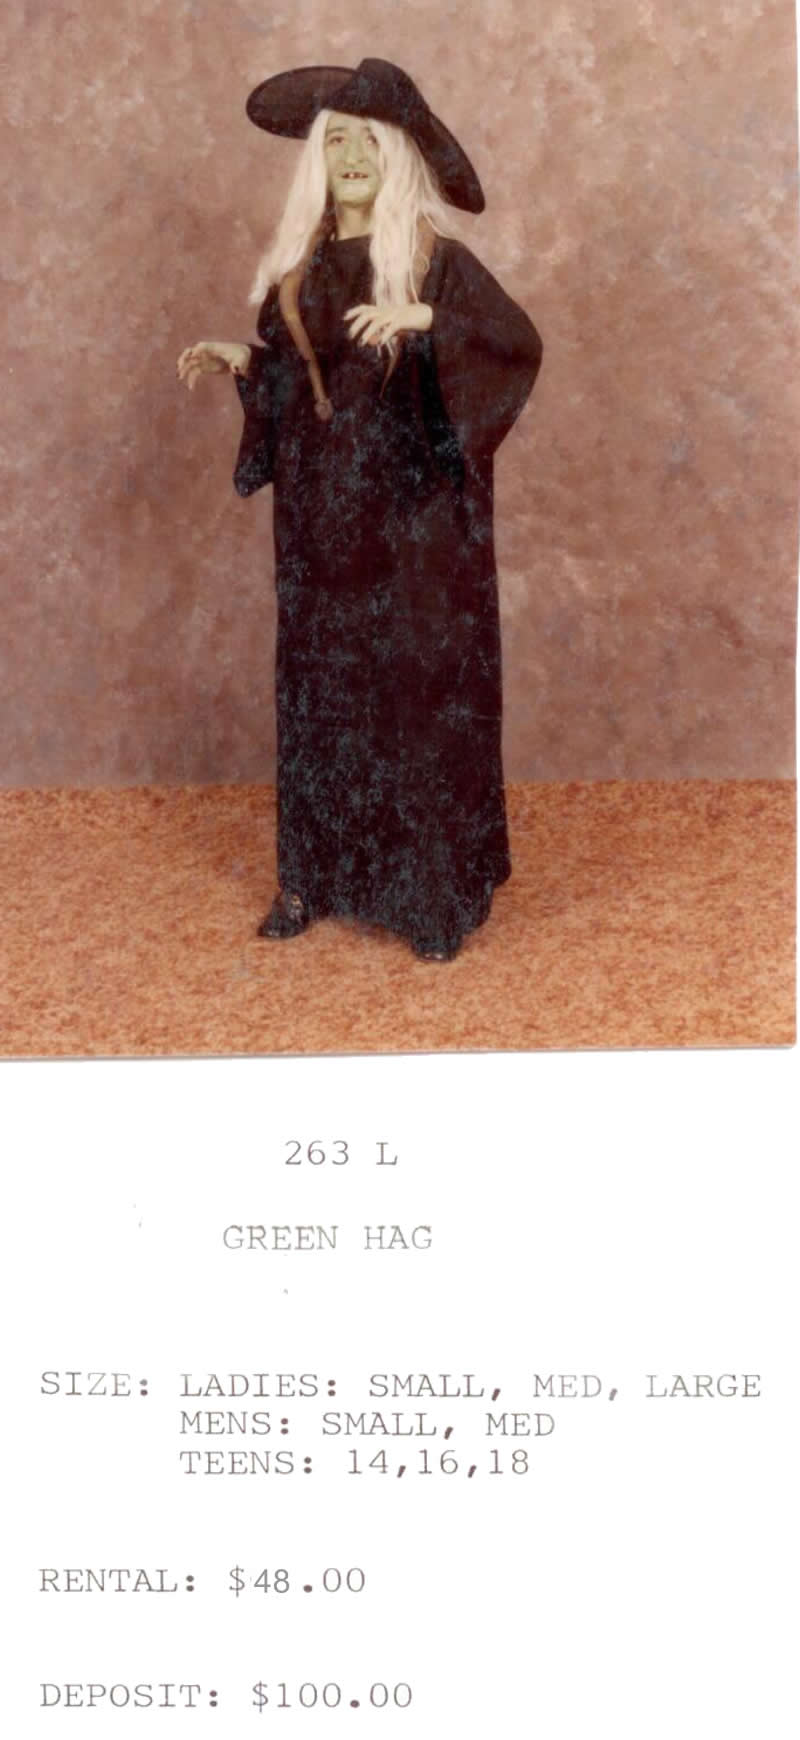 GREEN HAG